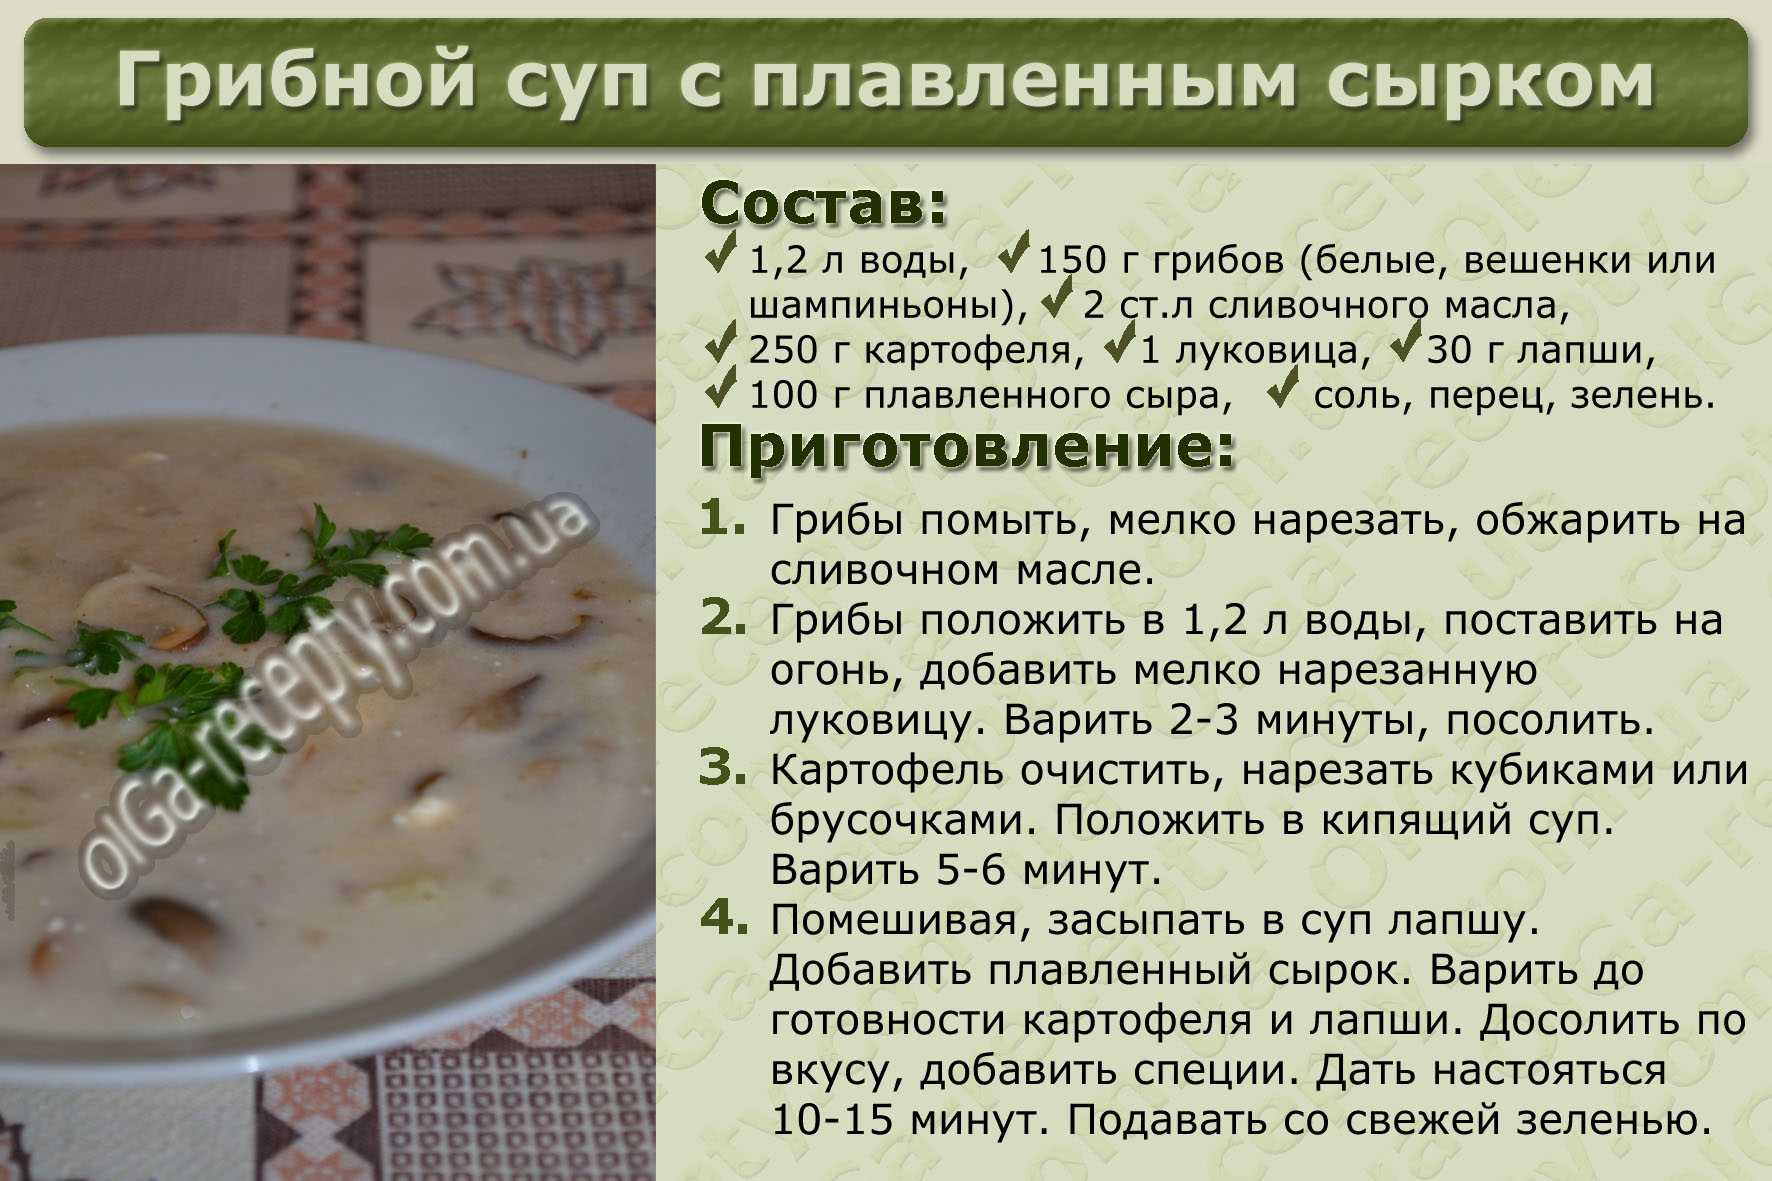 Суп из соленых грибов: способы приготовления и рецепты, польза и вред от использования продукта